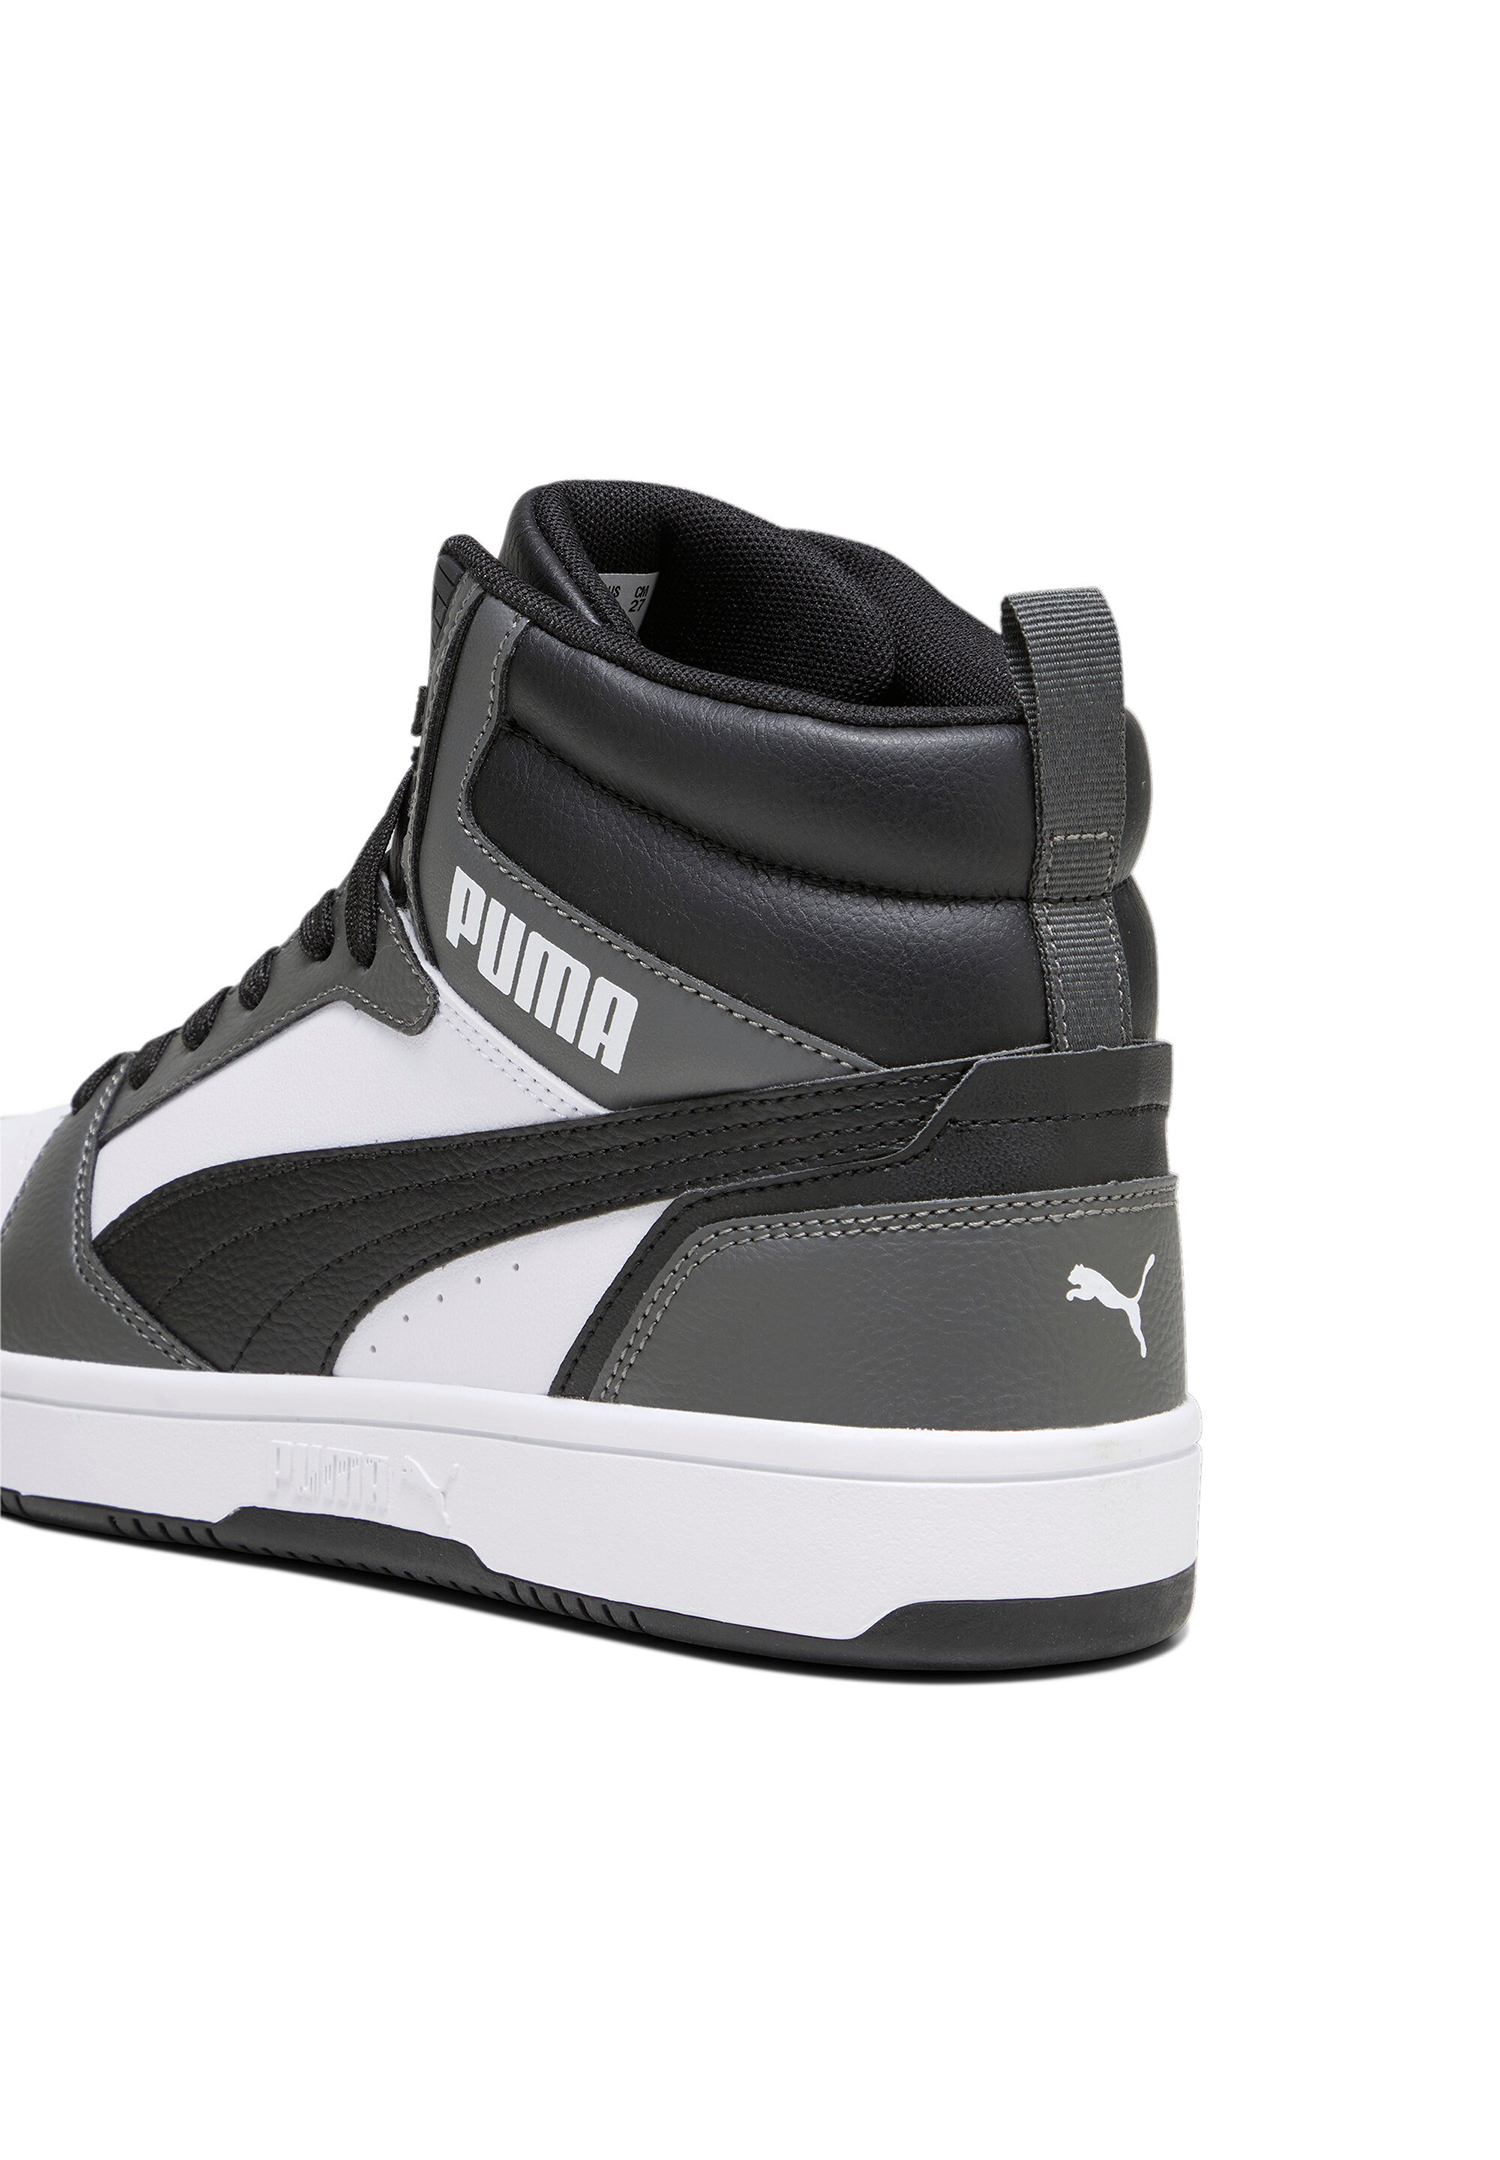 Puma Rebound v6 Hoher Sneaker Stiefel Boots Herren Sneaker 392326 03 weiss grau schwarz